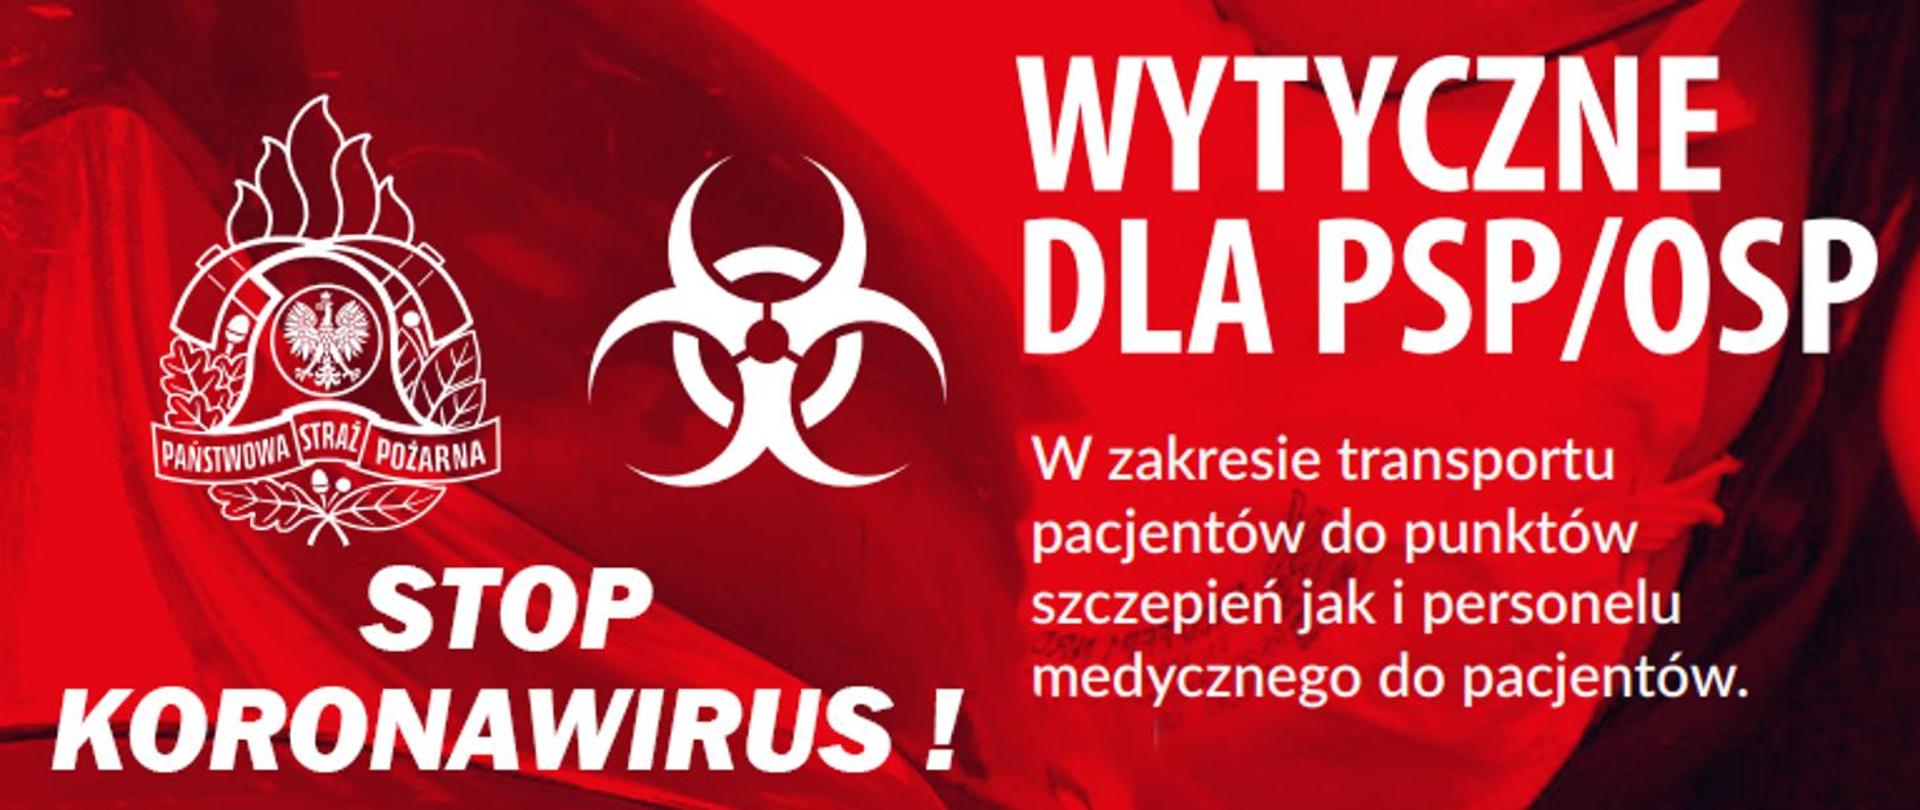 zdjęcie przedstawia napis Stop Koronawirus! oraz Wytyczne dla PSP/OSP w zakresie transportu pacjentów do punktów szczepień jak i personelu medycznego pacjentów. z lewej strony od góry umieszczono logo PSP i symbol zagrożenia biologicznego.